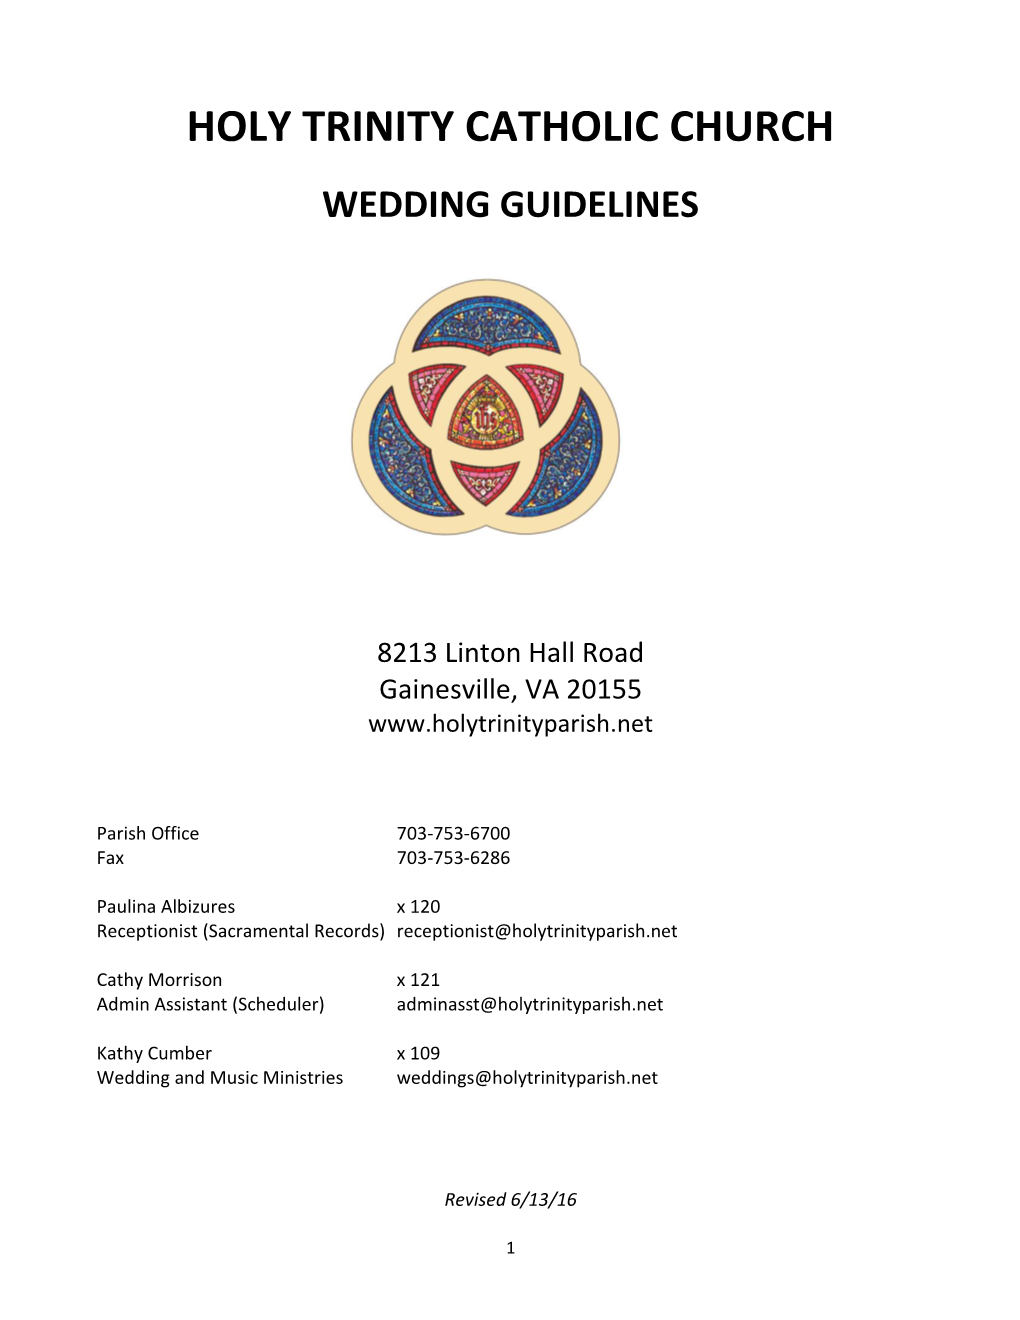 Holy Trinity Catholic Church Wedding Guidelines